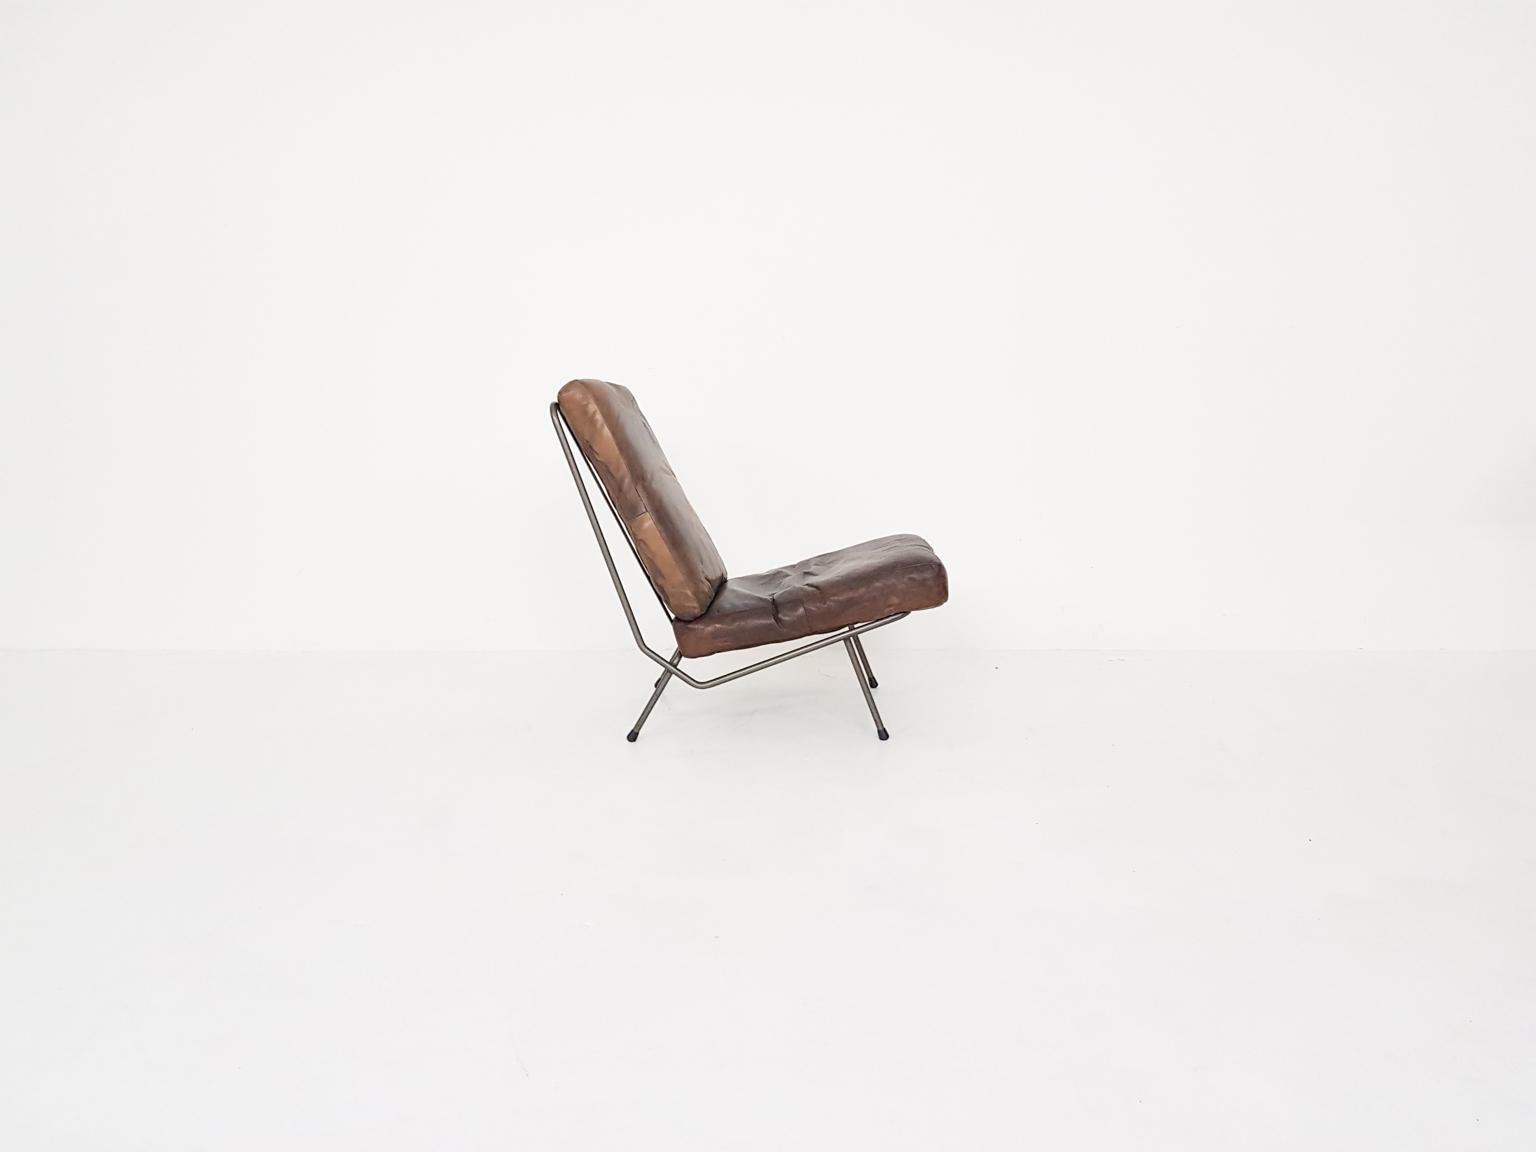 Seltener Loungesessel, entworfen von Koene Oberman, dem Gründer von Gelderland. Dieser Stuhl ist die Ausgabe ohne Armlehnen. Die Version mit Armlehnen ist weiter verbreitet. Wir hatten diese Ausgabe tatsächlich noch nie gesehen.

Der Stuhl besteht